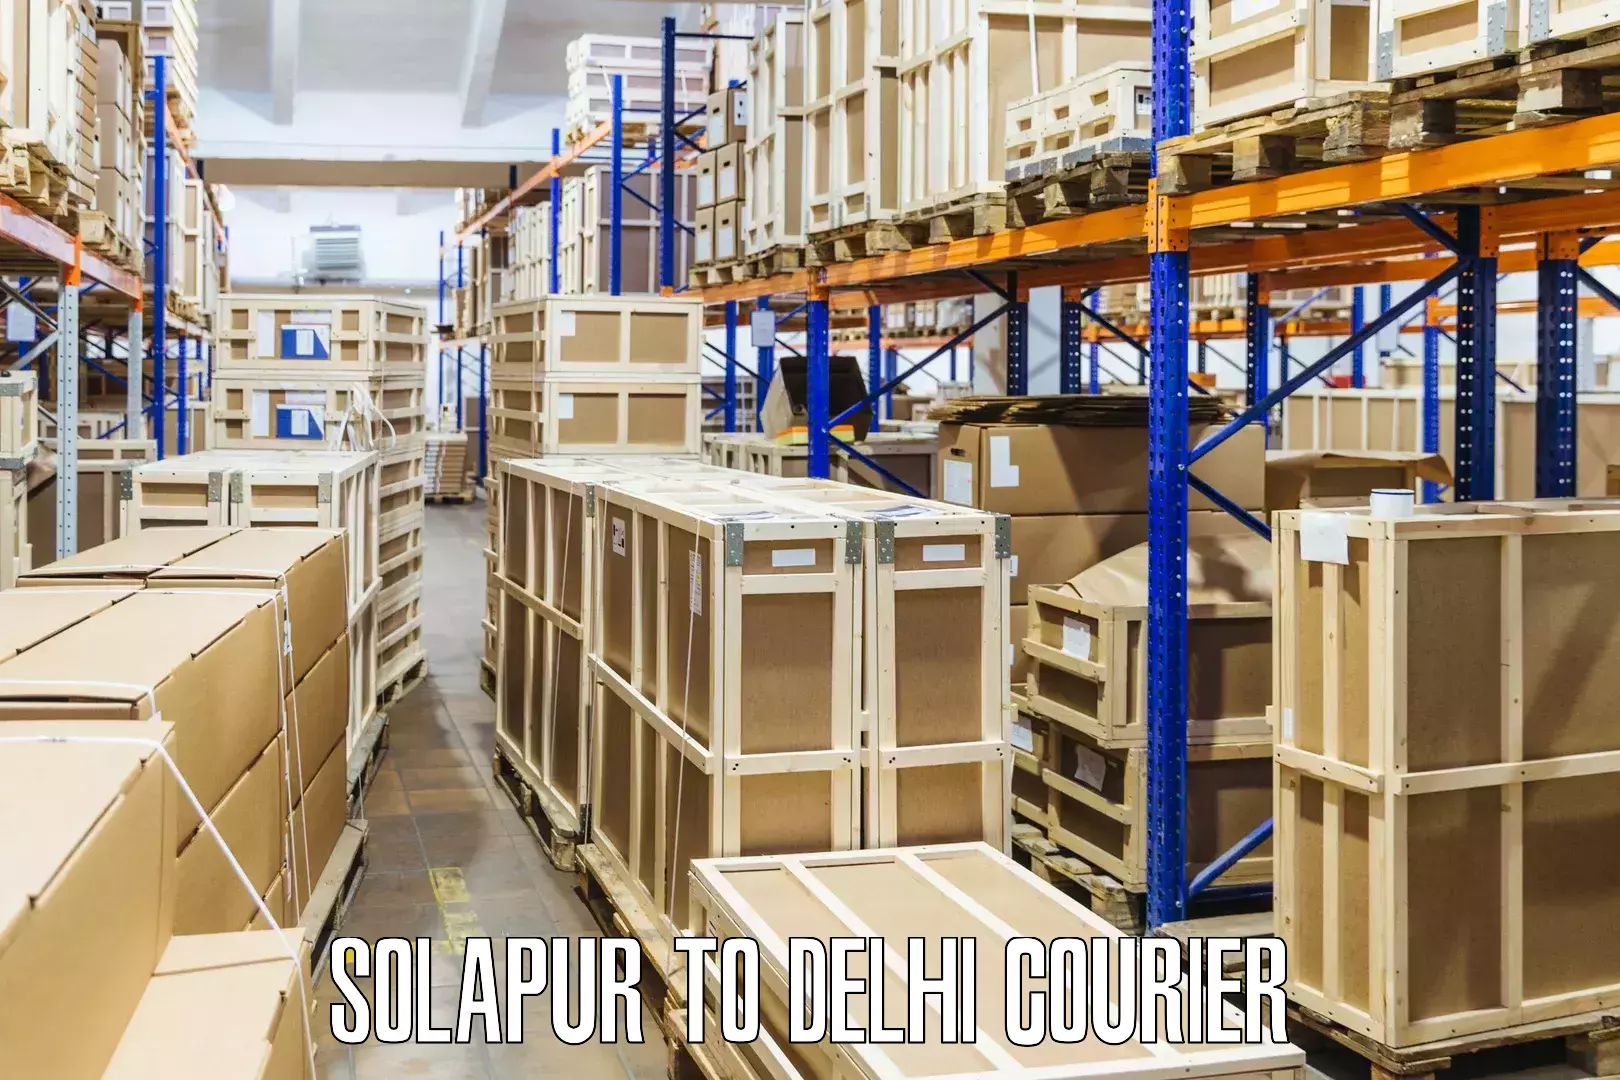 Premium courier solutions Solapur to Jhilmil